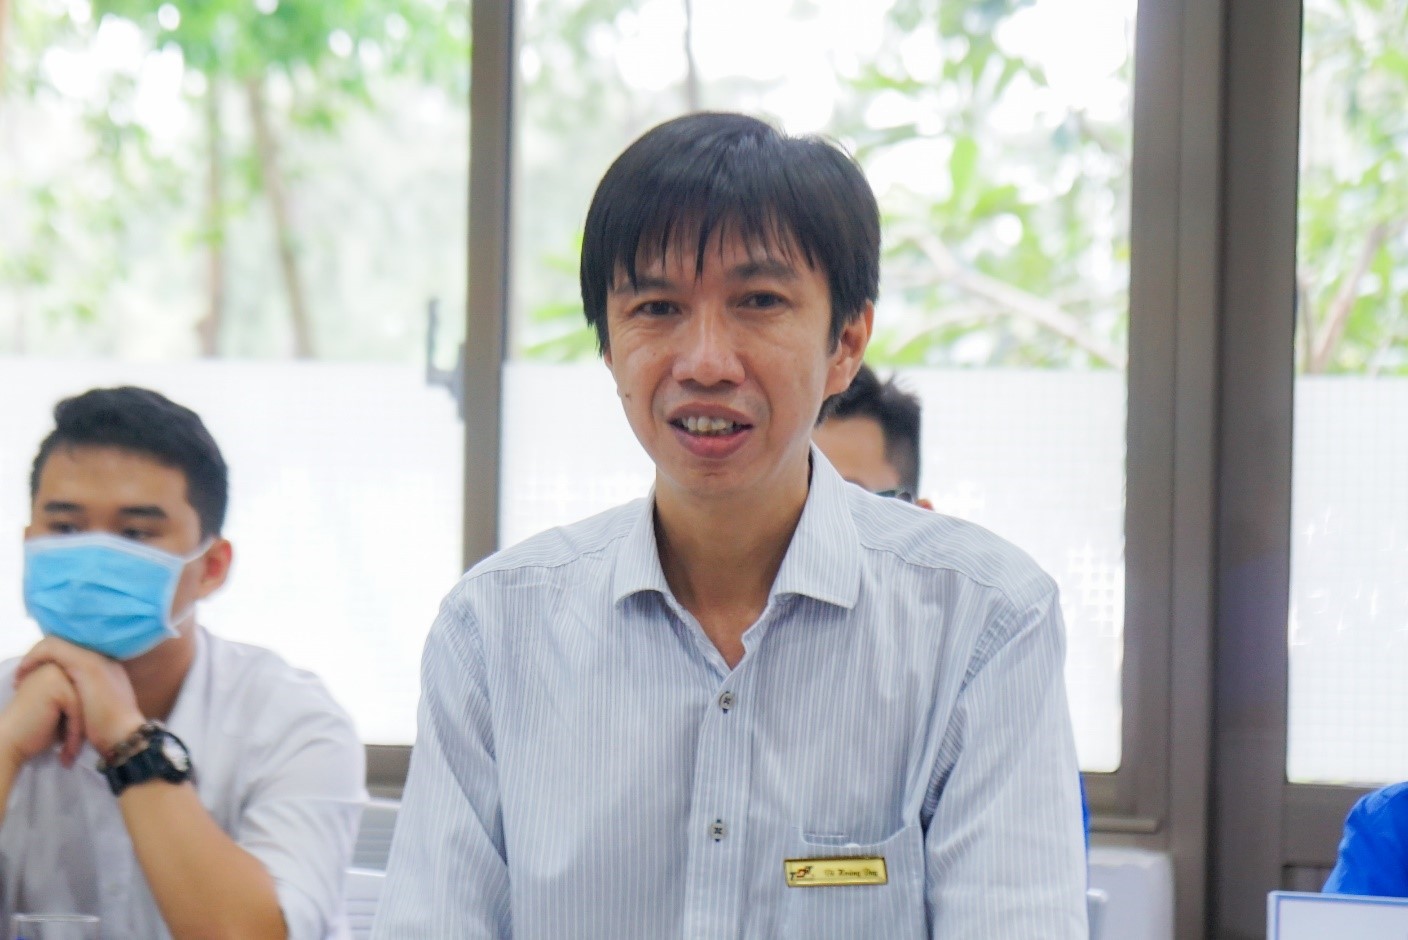 TS. Võ Hoàng Duy, Phó bí thư Đảng ủy, Giám đốc Trung tâm hợp tác doanh nghiệp và cựu sinh viên phát biểu tại buổi làm việc.